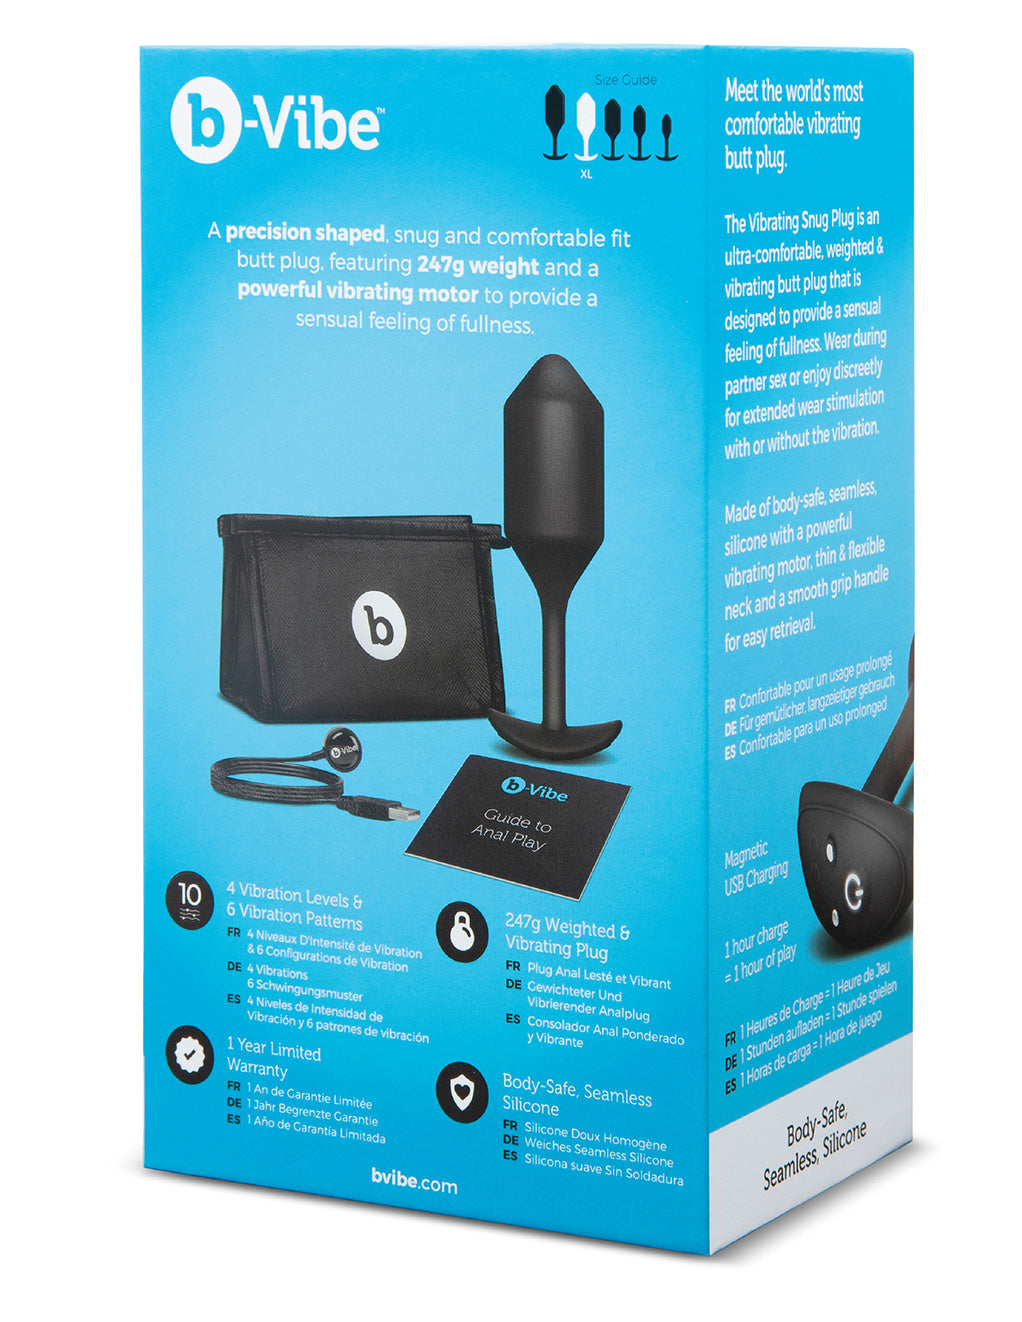 B-Vibe X-Large Vibrating Snug Plug- Black- Back box